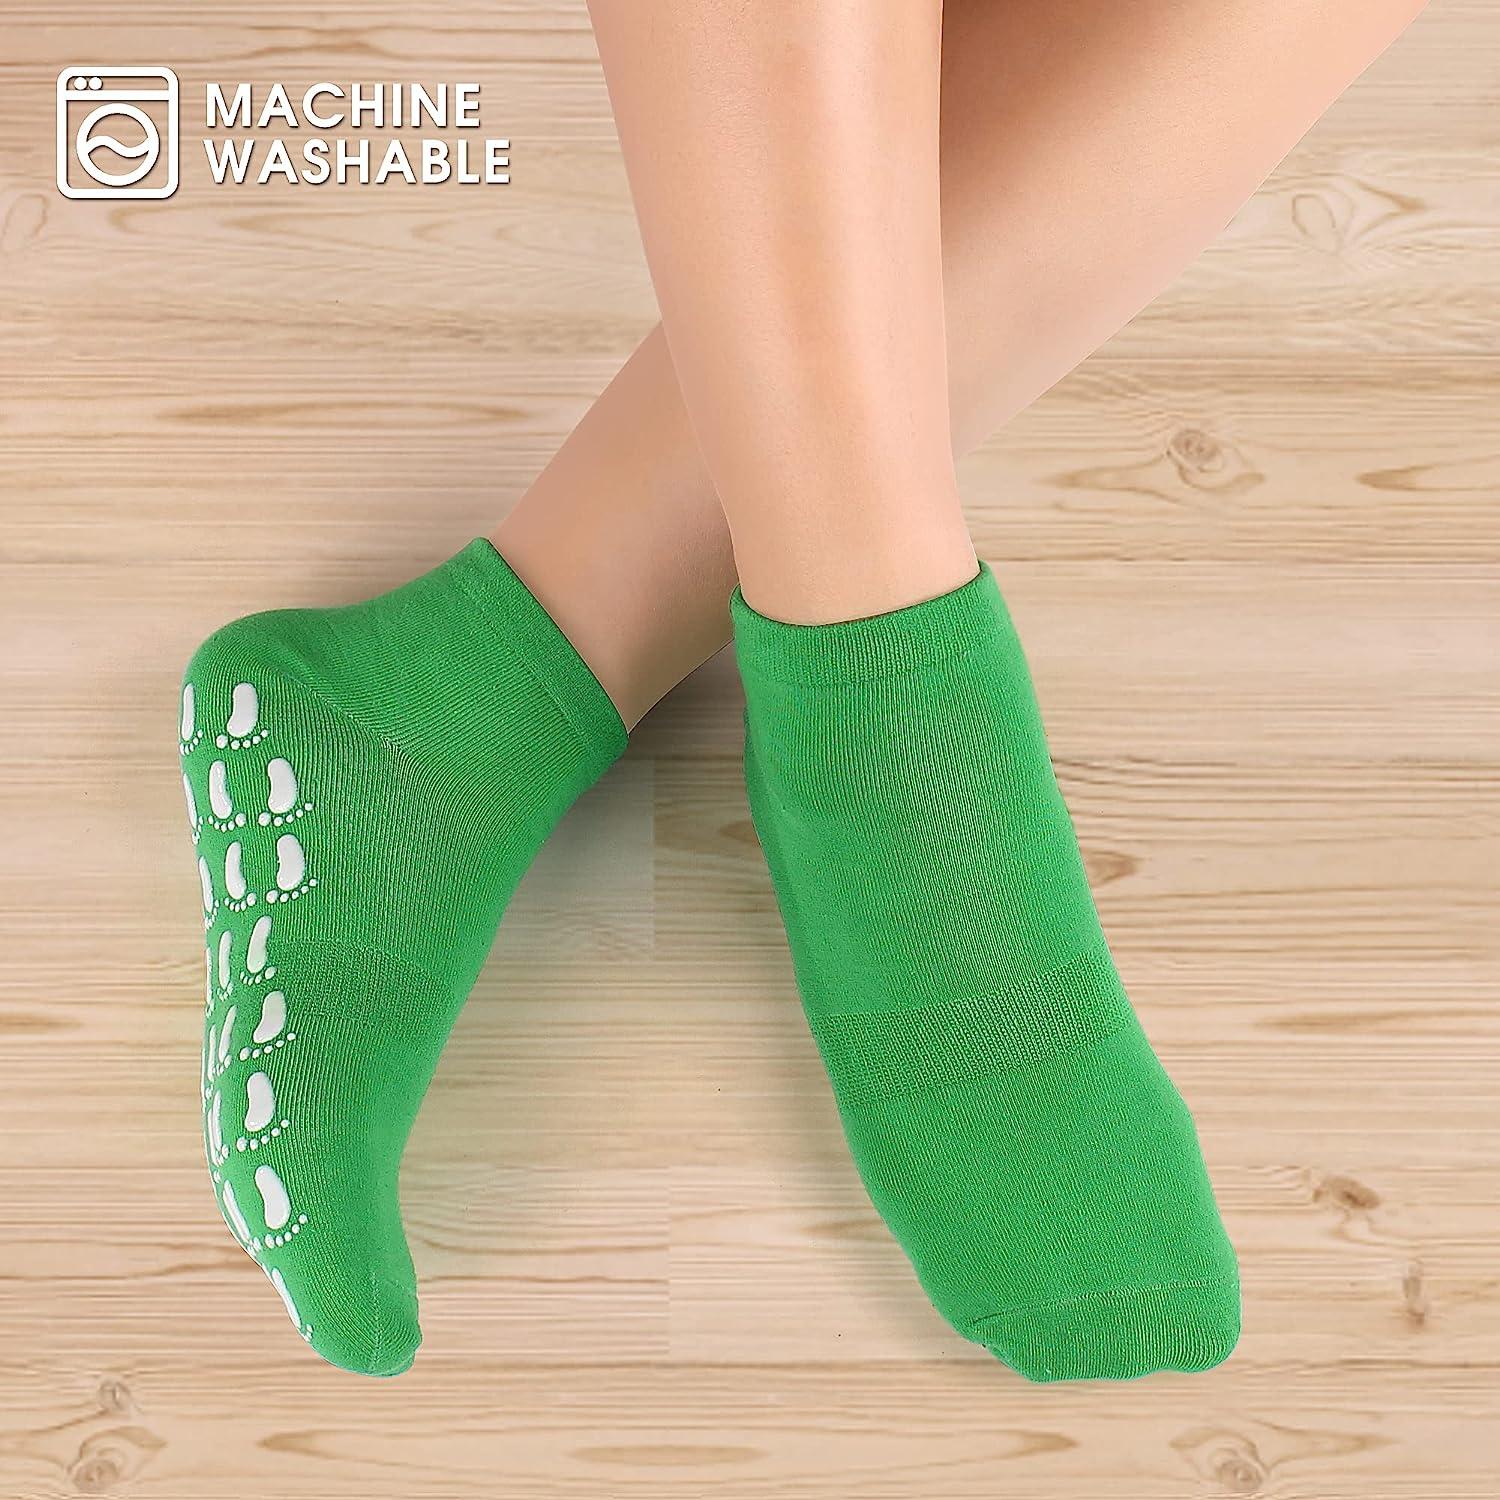 Non Slip Youth Soccer Grip Socks Pilates Athletic Grippy Socks Hospital  Socks with Grips for Men Women